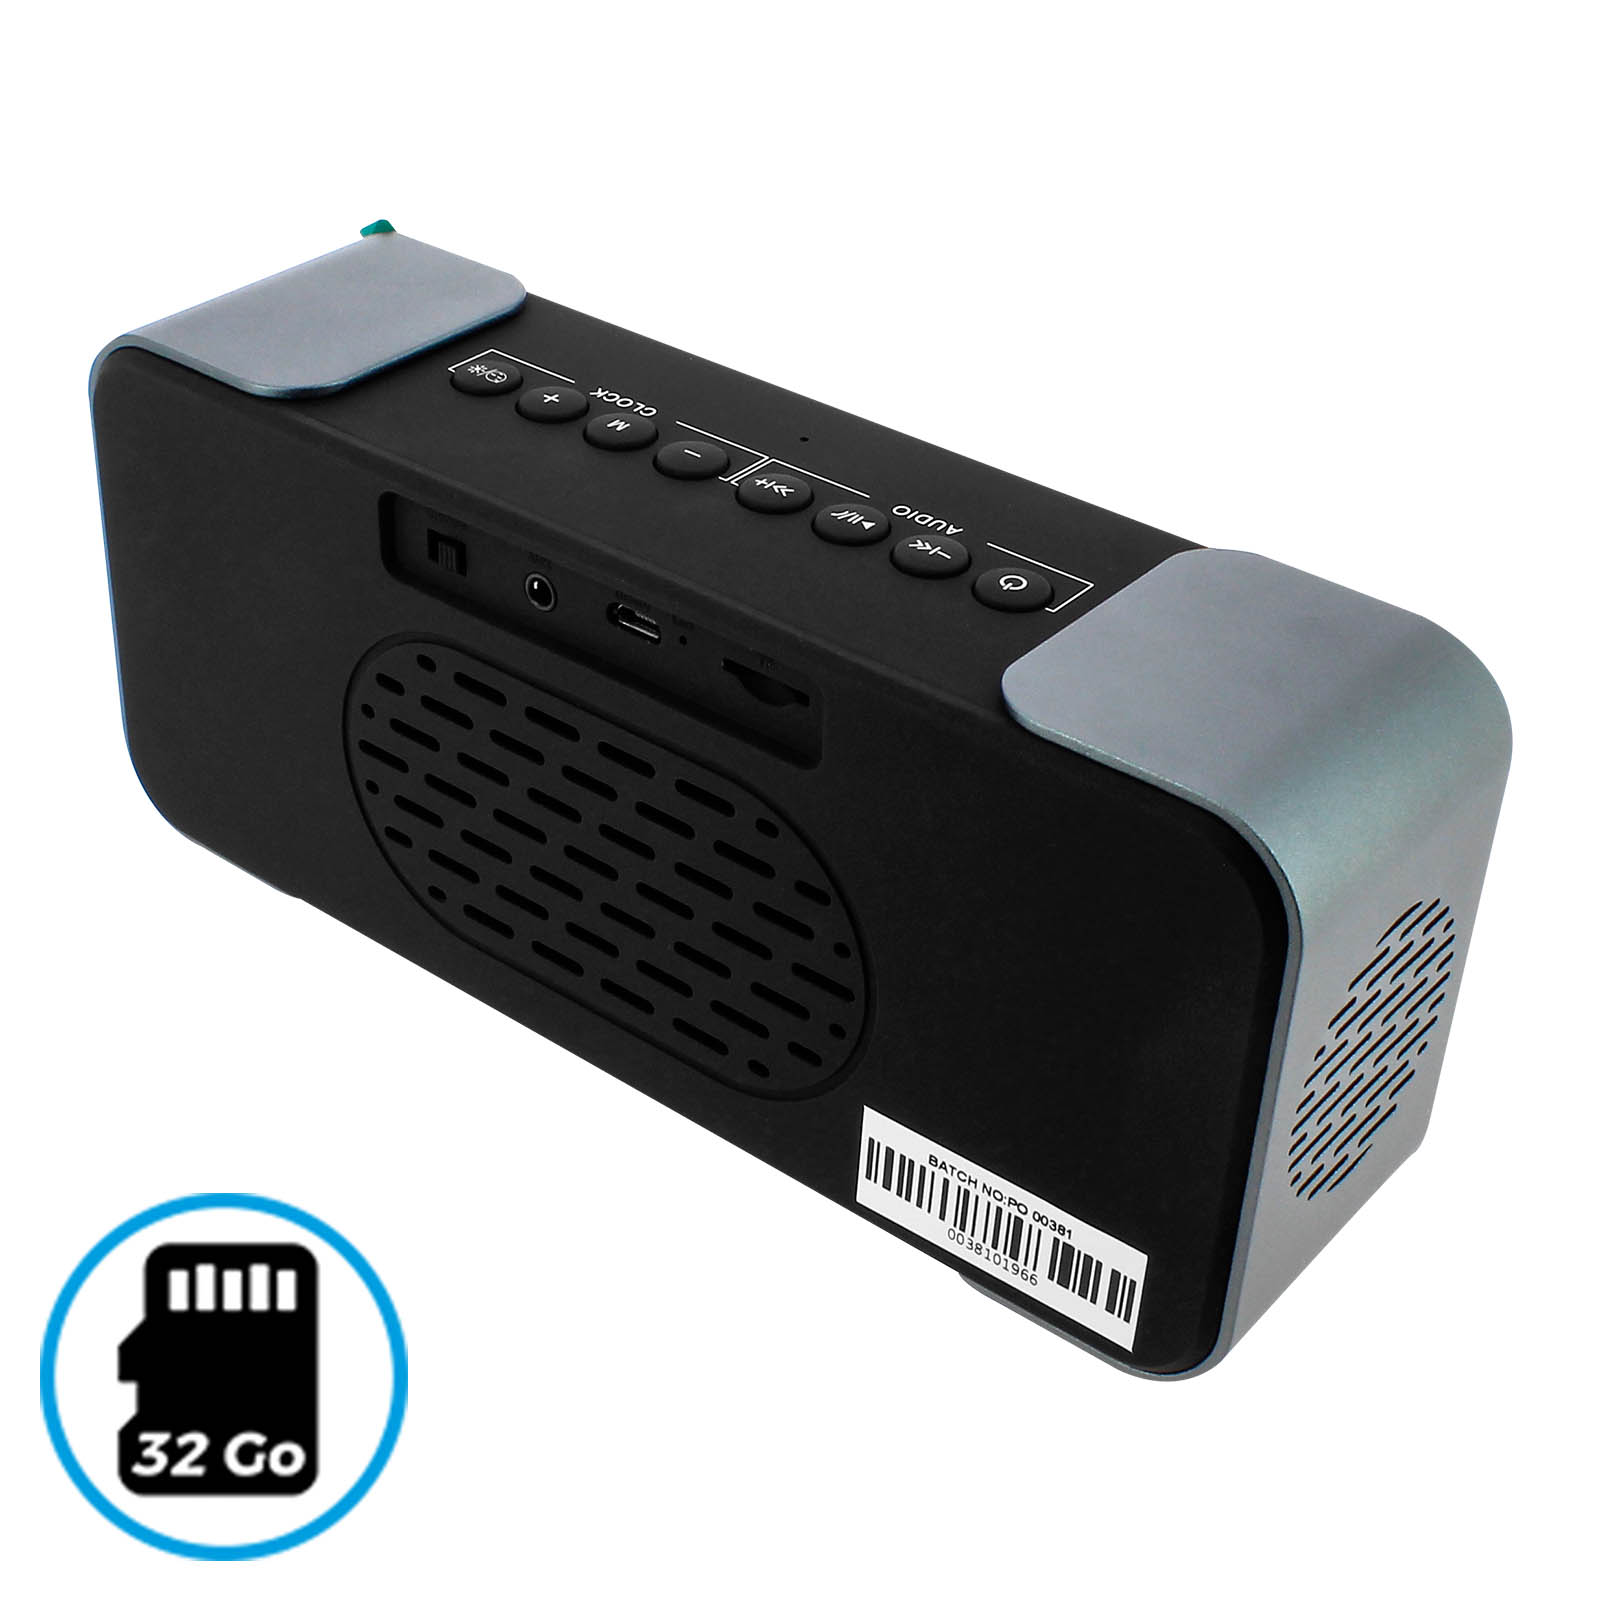 Enceinte Bluetooth Fonction Radio Réveil - Lecteur Micro-SD et Effet  Miroir, Blaupunkt - Argent et Noir - Français